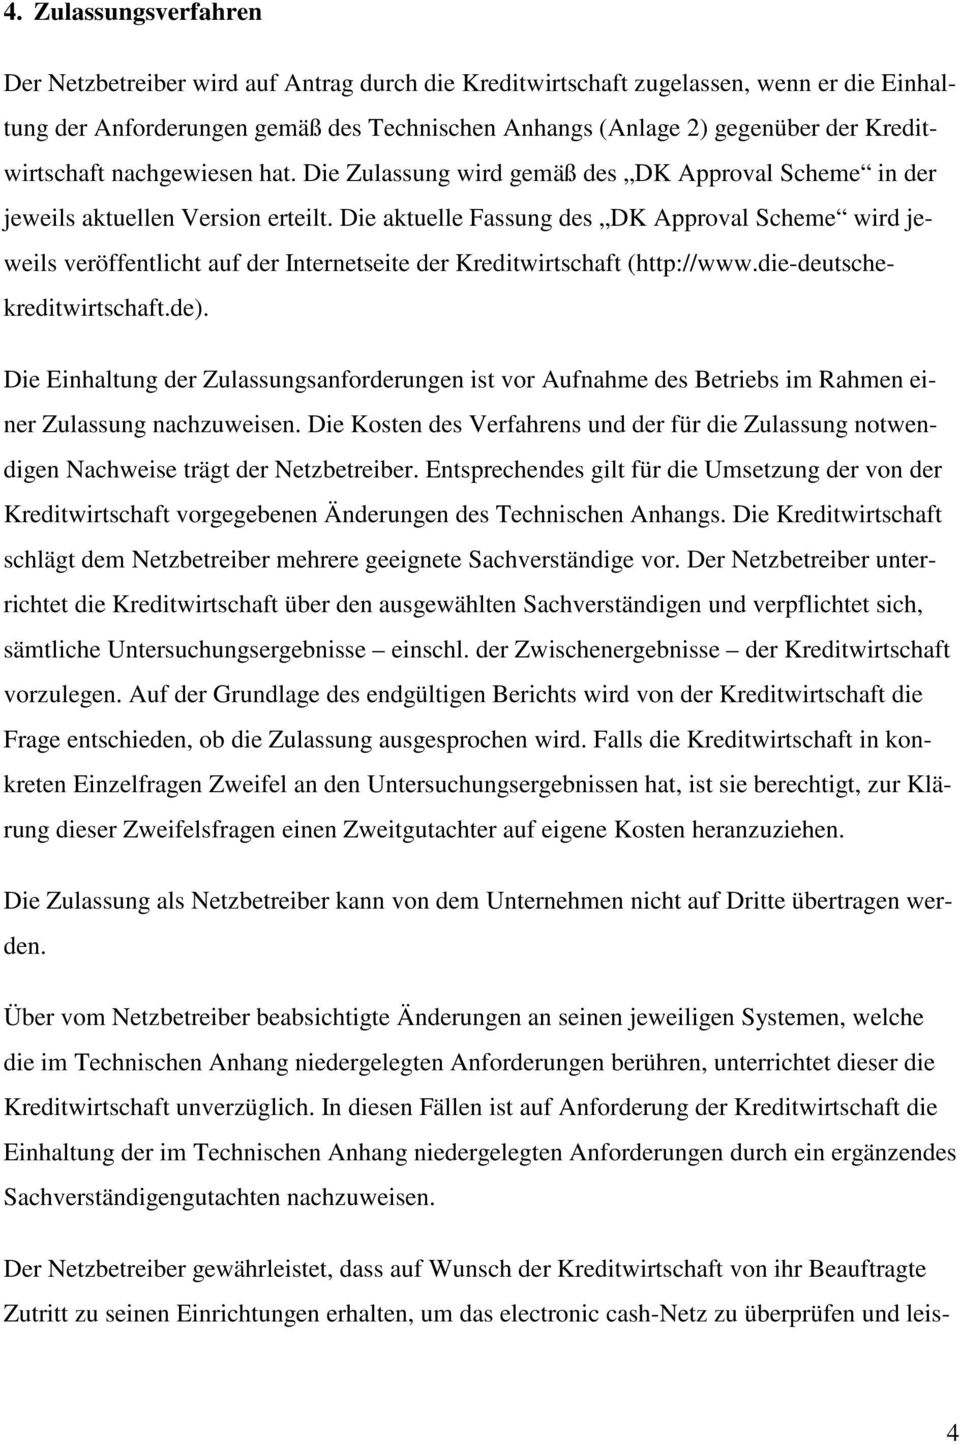 Die aktuelle Fassung des DK Approval Scheme wird jeweils veröffentlicht auf der Internetseite der Kreditwirtschaft (http://www.die-deutschekreditwirtschaft.de).